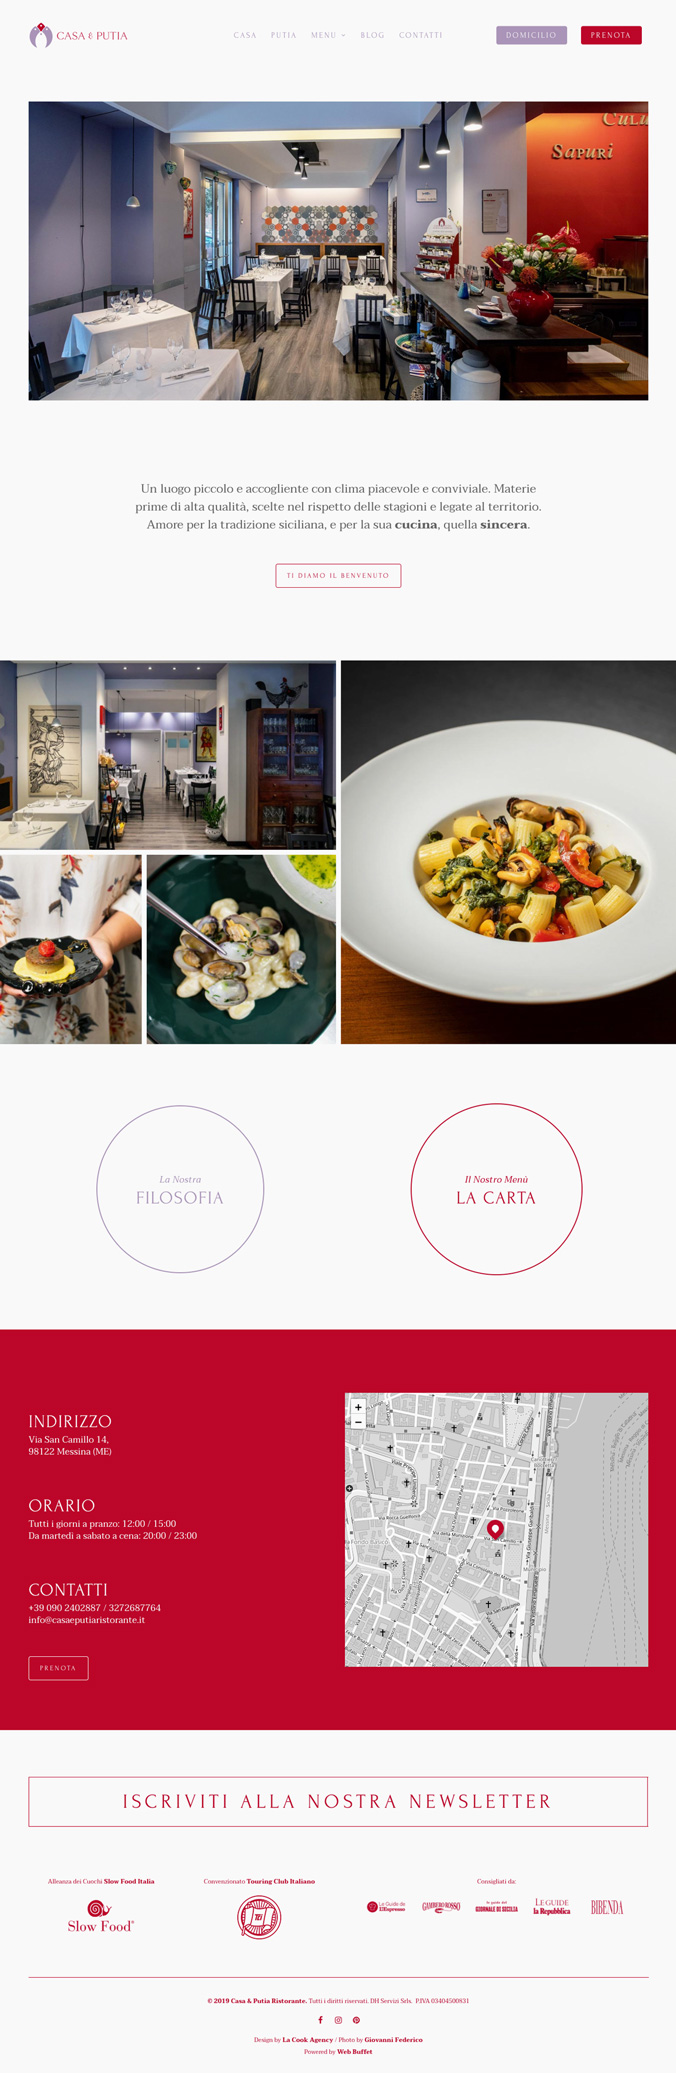 La Cook Website Casa & Putia Design